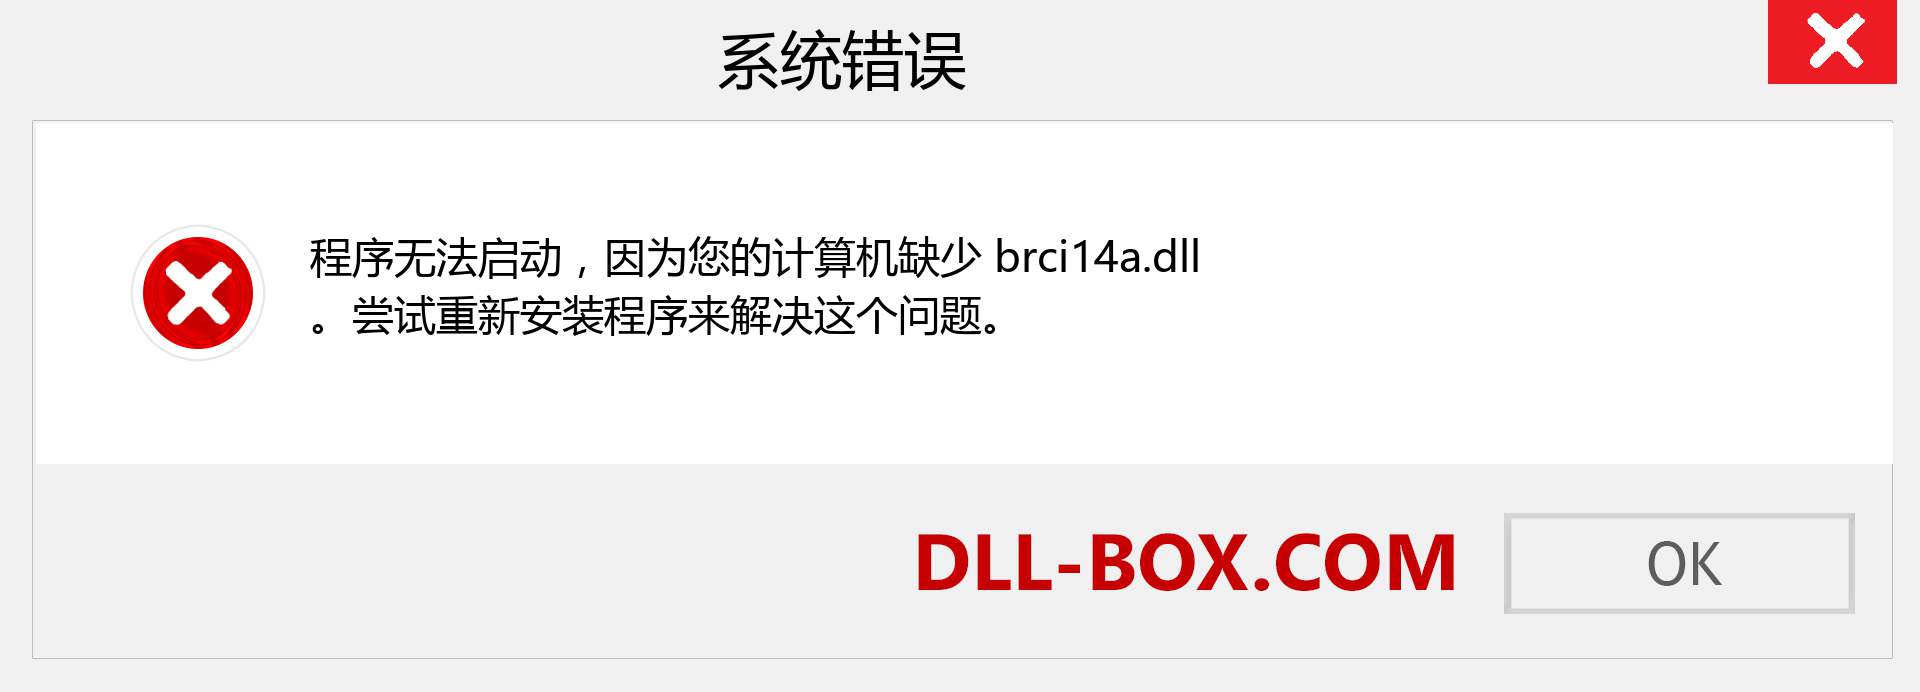 brci14a.dll 文件丢失？。 适用于 Windows 7、8、10 的下载 - 修复 Windows、照片、图像上的 brci14a dll 丢失错误